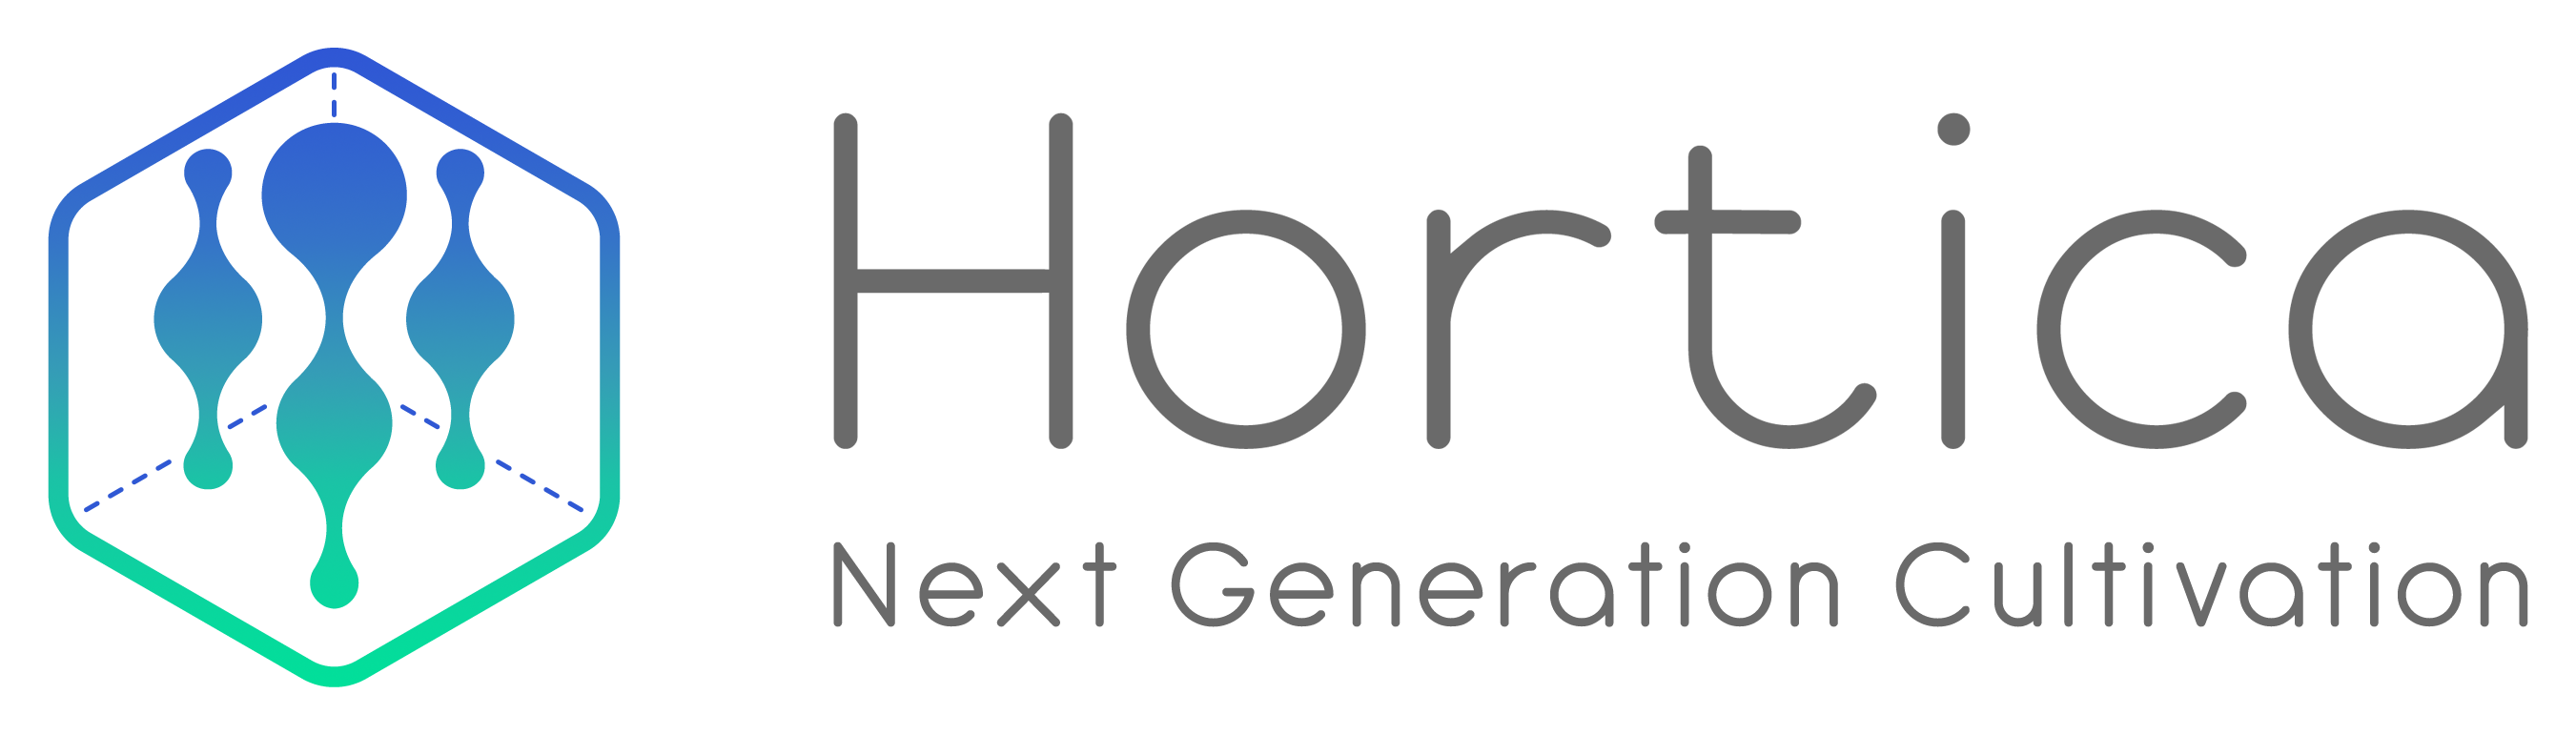 Hortica_logo_higher quality